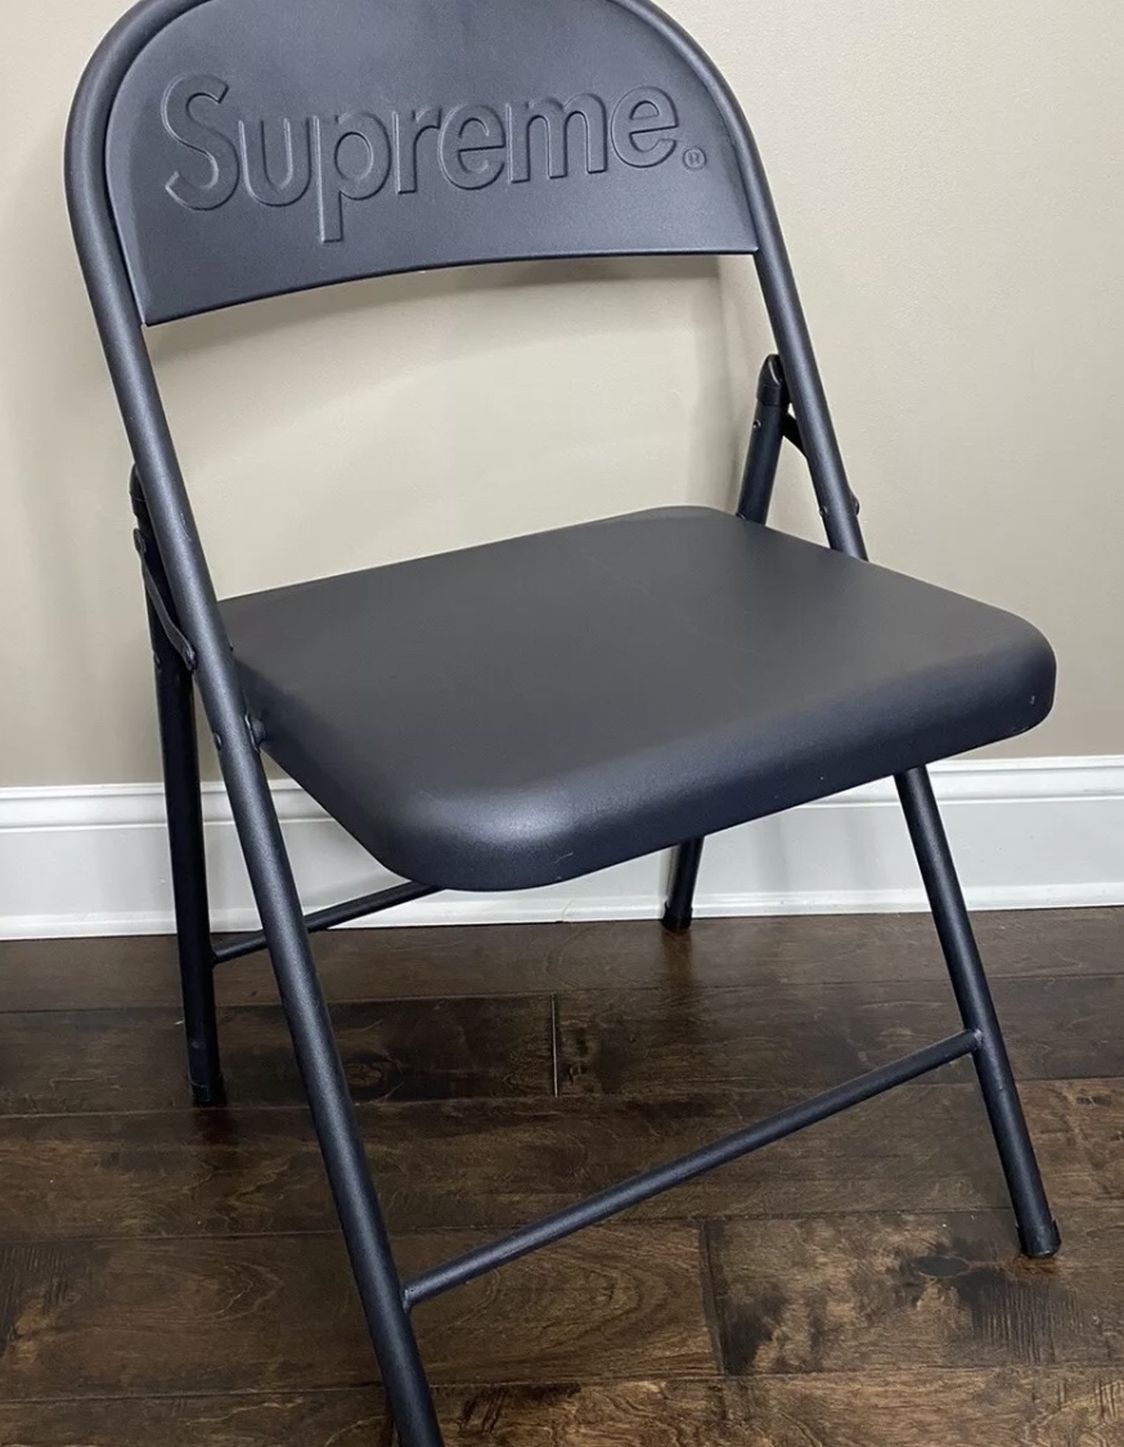 Black Supreme Metal Folding Chair - FW 20